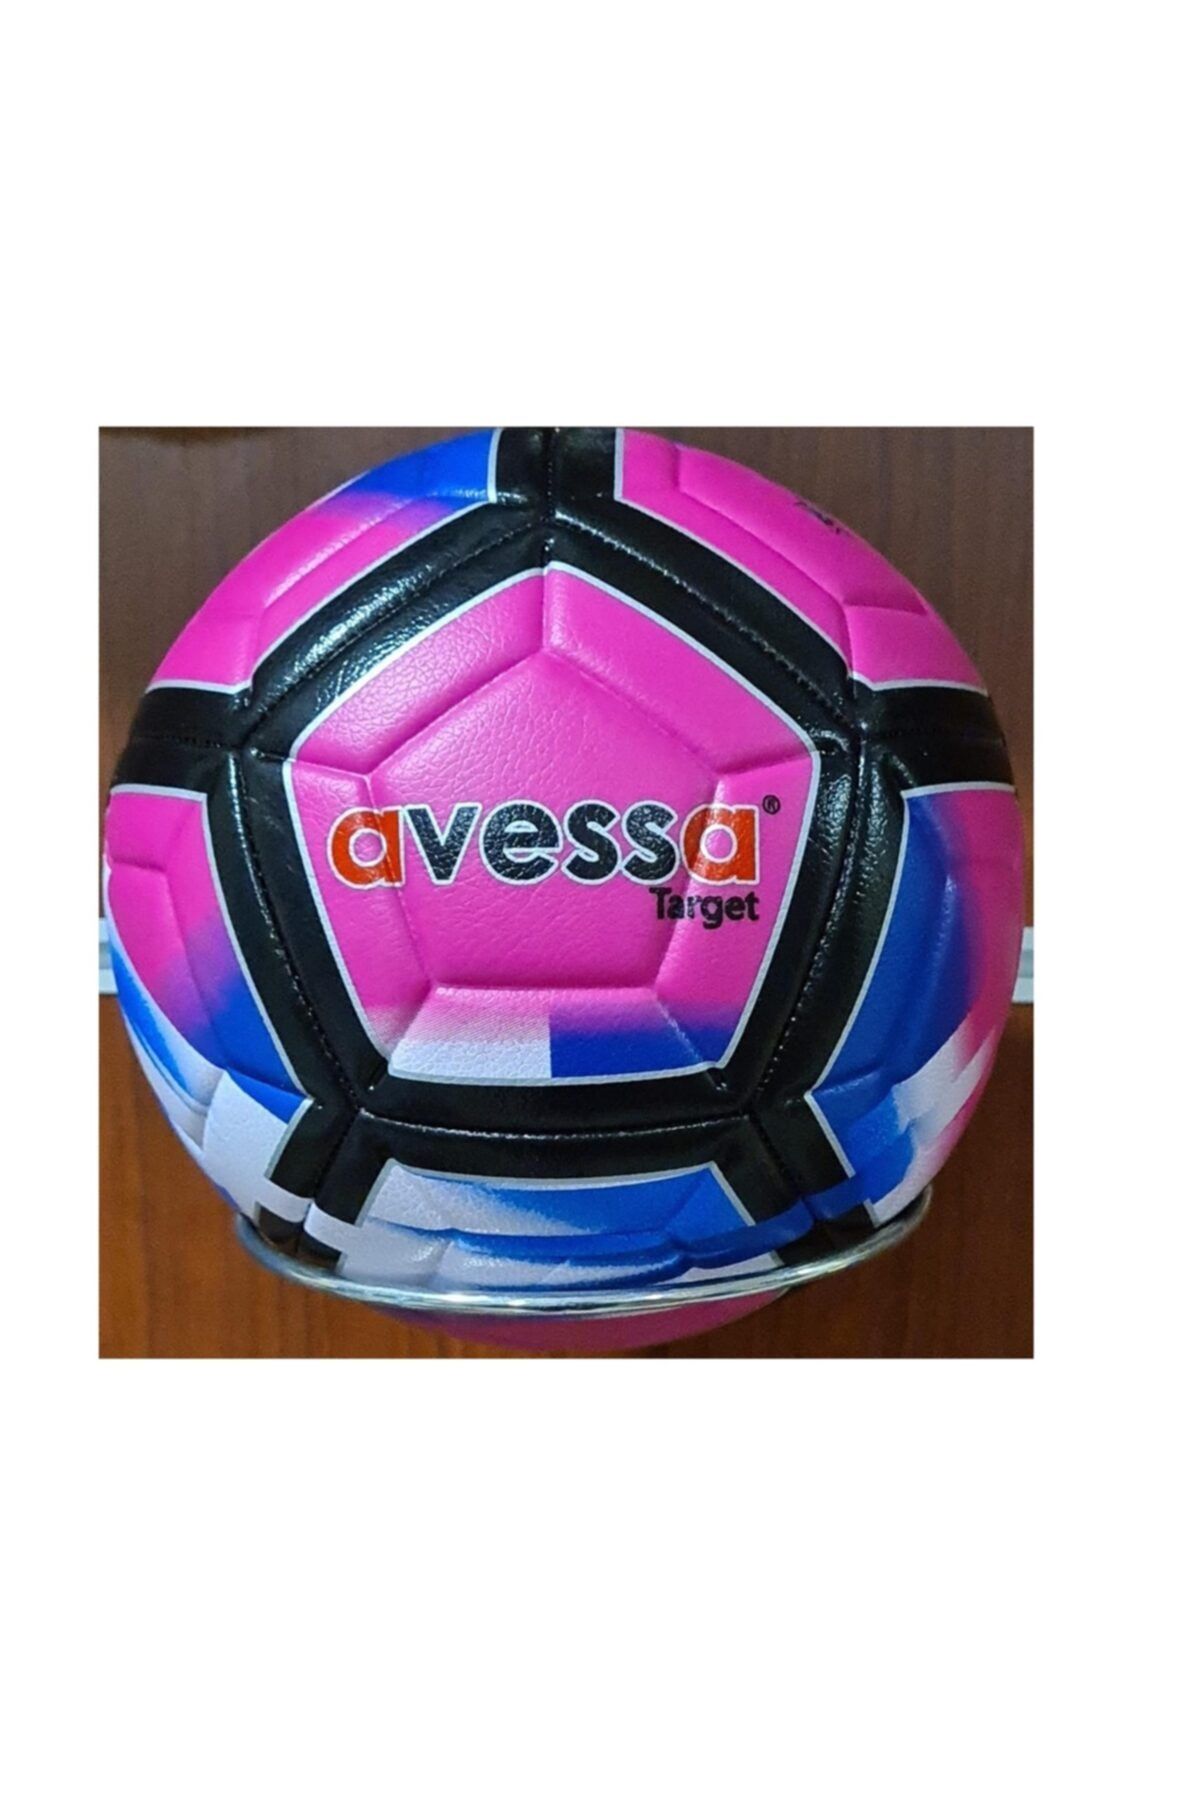 Avessa Ft-200 Target Dikişli Hibrit Futbol Topu No 5 Maç Topu Mor